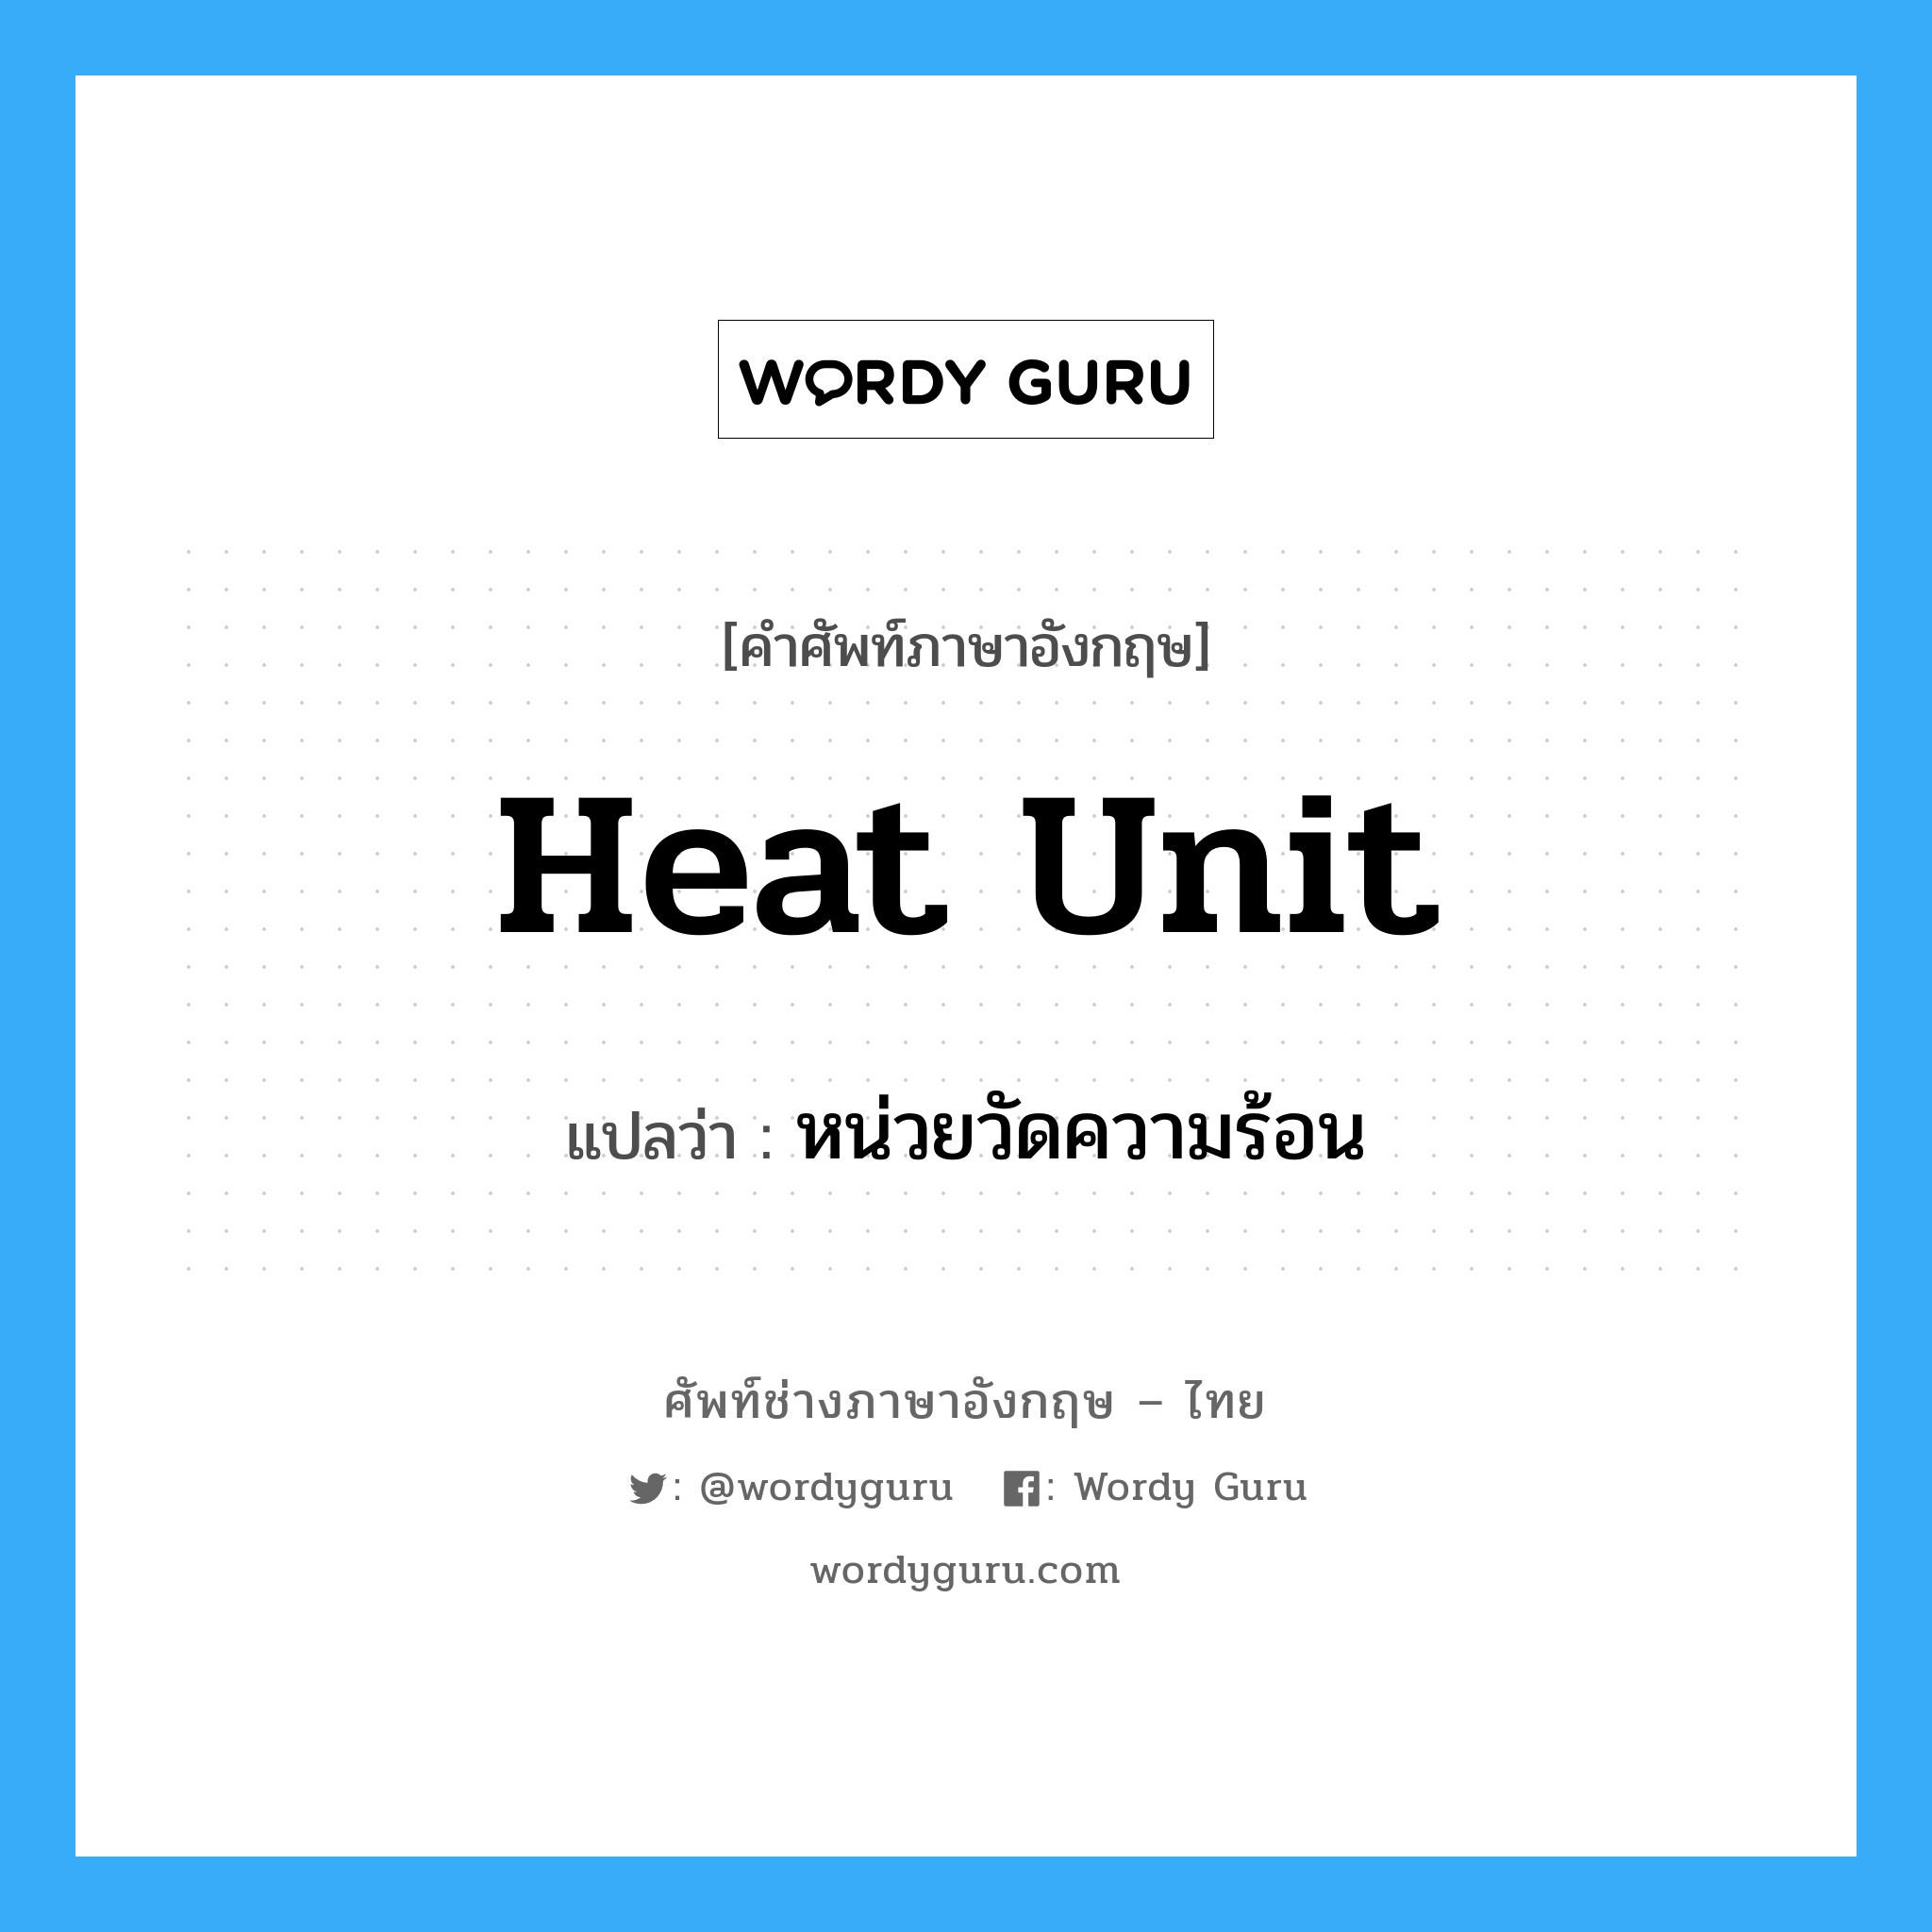 หน่วยวัดความร้อน ภาษาอังกฤษ?, คำศัพท์ช่างภาษาอังกฤษ - ไทย หน่วยวัดความร้อน คำศัพท์ภาษาอังกฤษ หน่วยวัดความร้อน แปลว่า heat unit